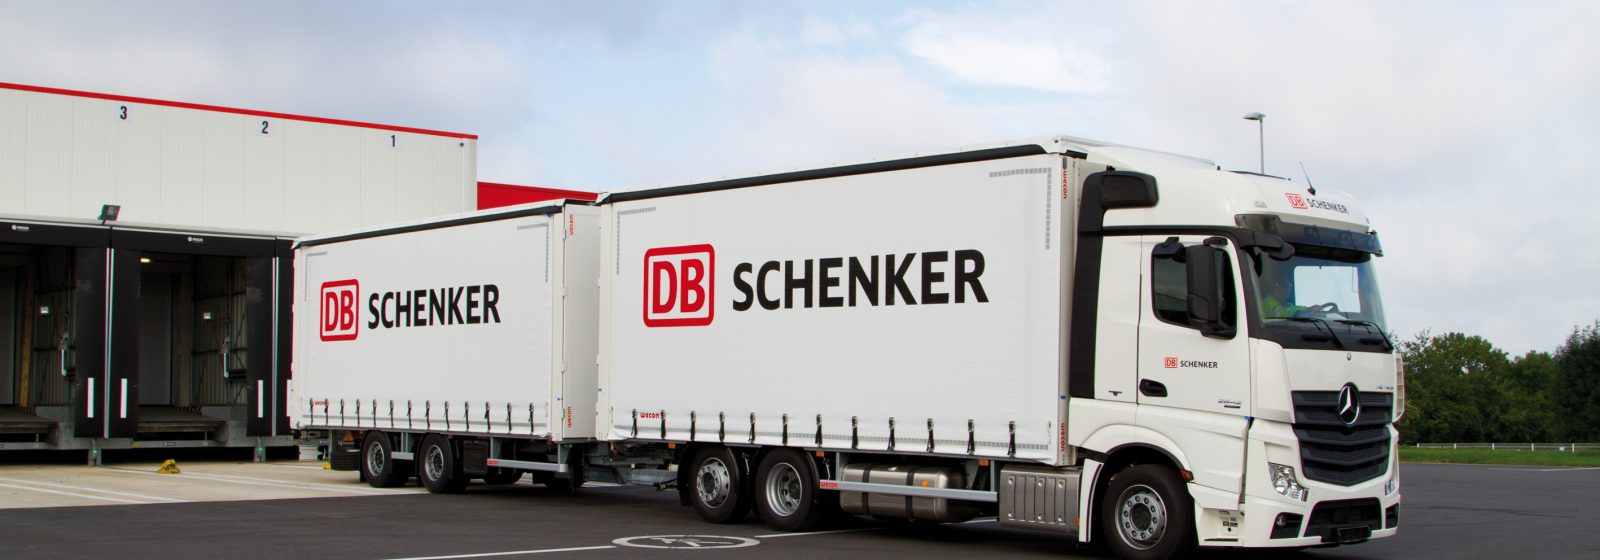 Vrachtwagen DB Schenker